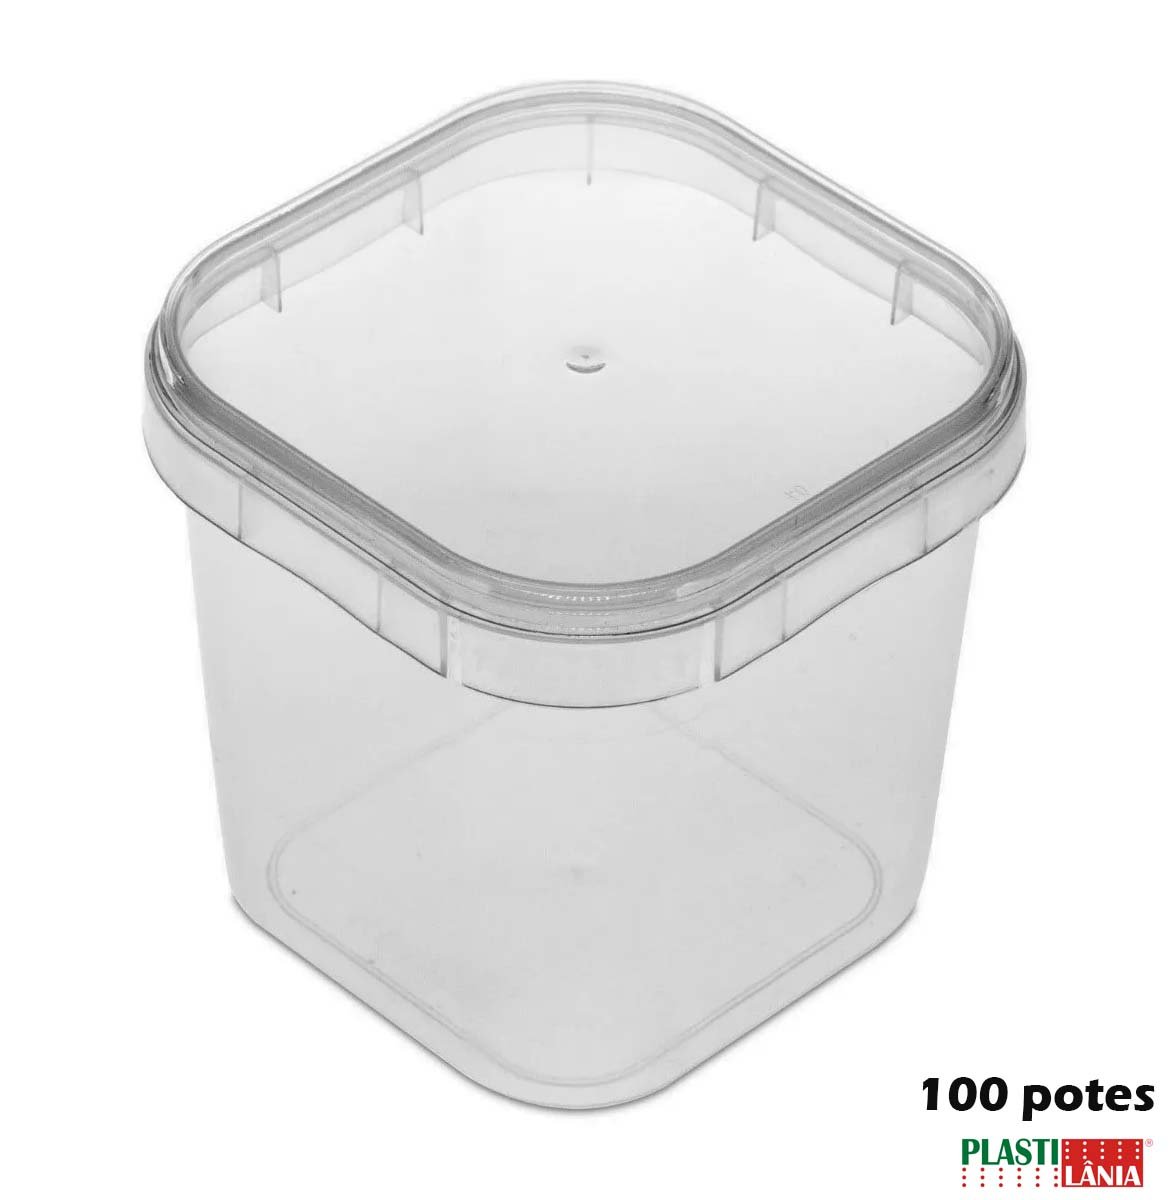 Potes Quadrados Bolo No Pote Plástico 220ml Lacre - 100 Potinhos Plast - 1